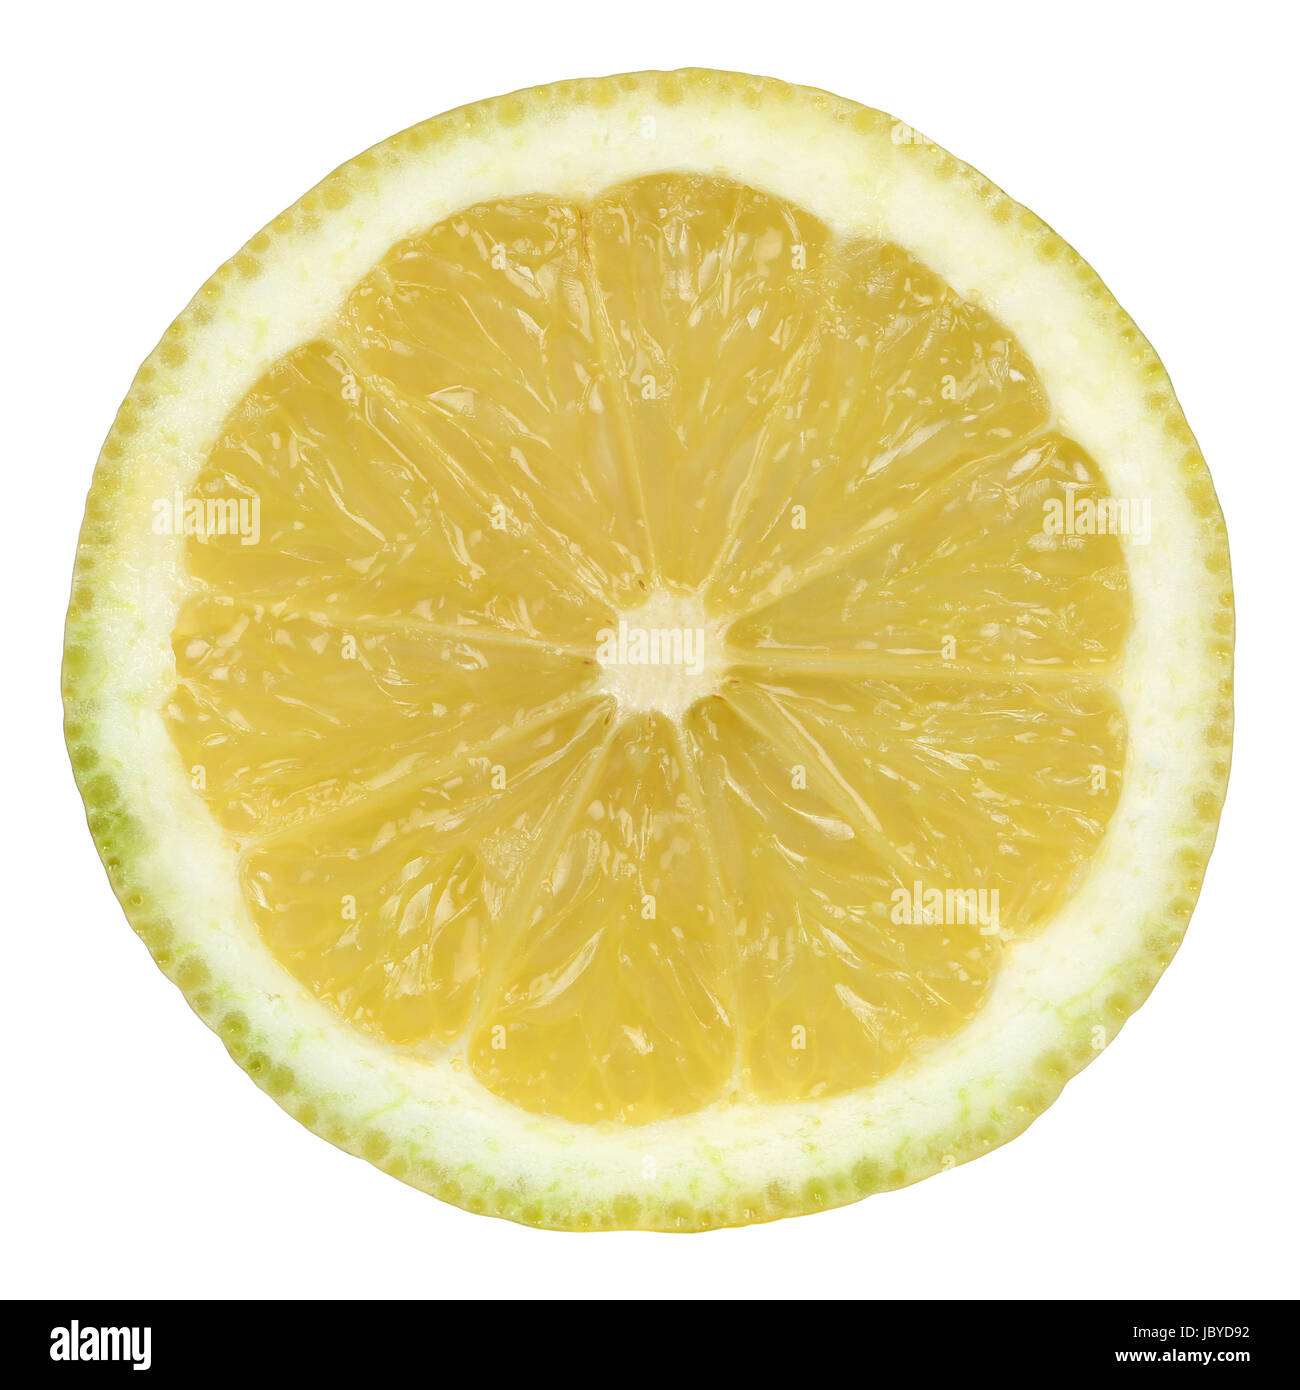 Durchgeschnittene Zitrone, isoliert vor einem weissen Hintergrund Banque D'Images